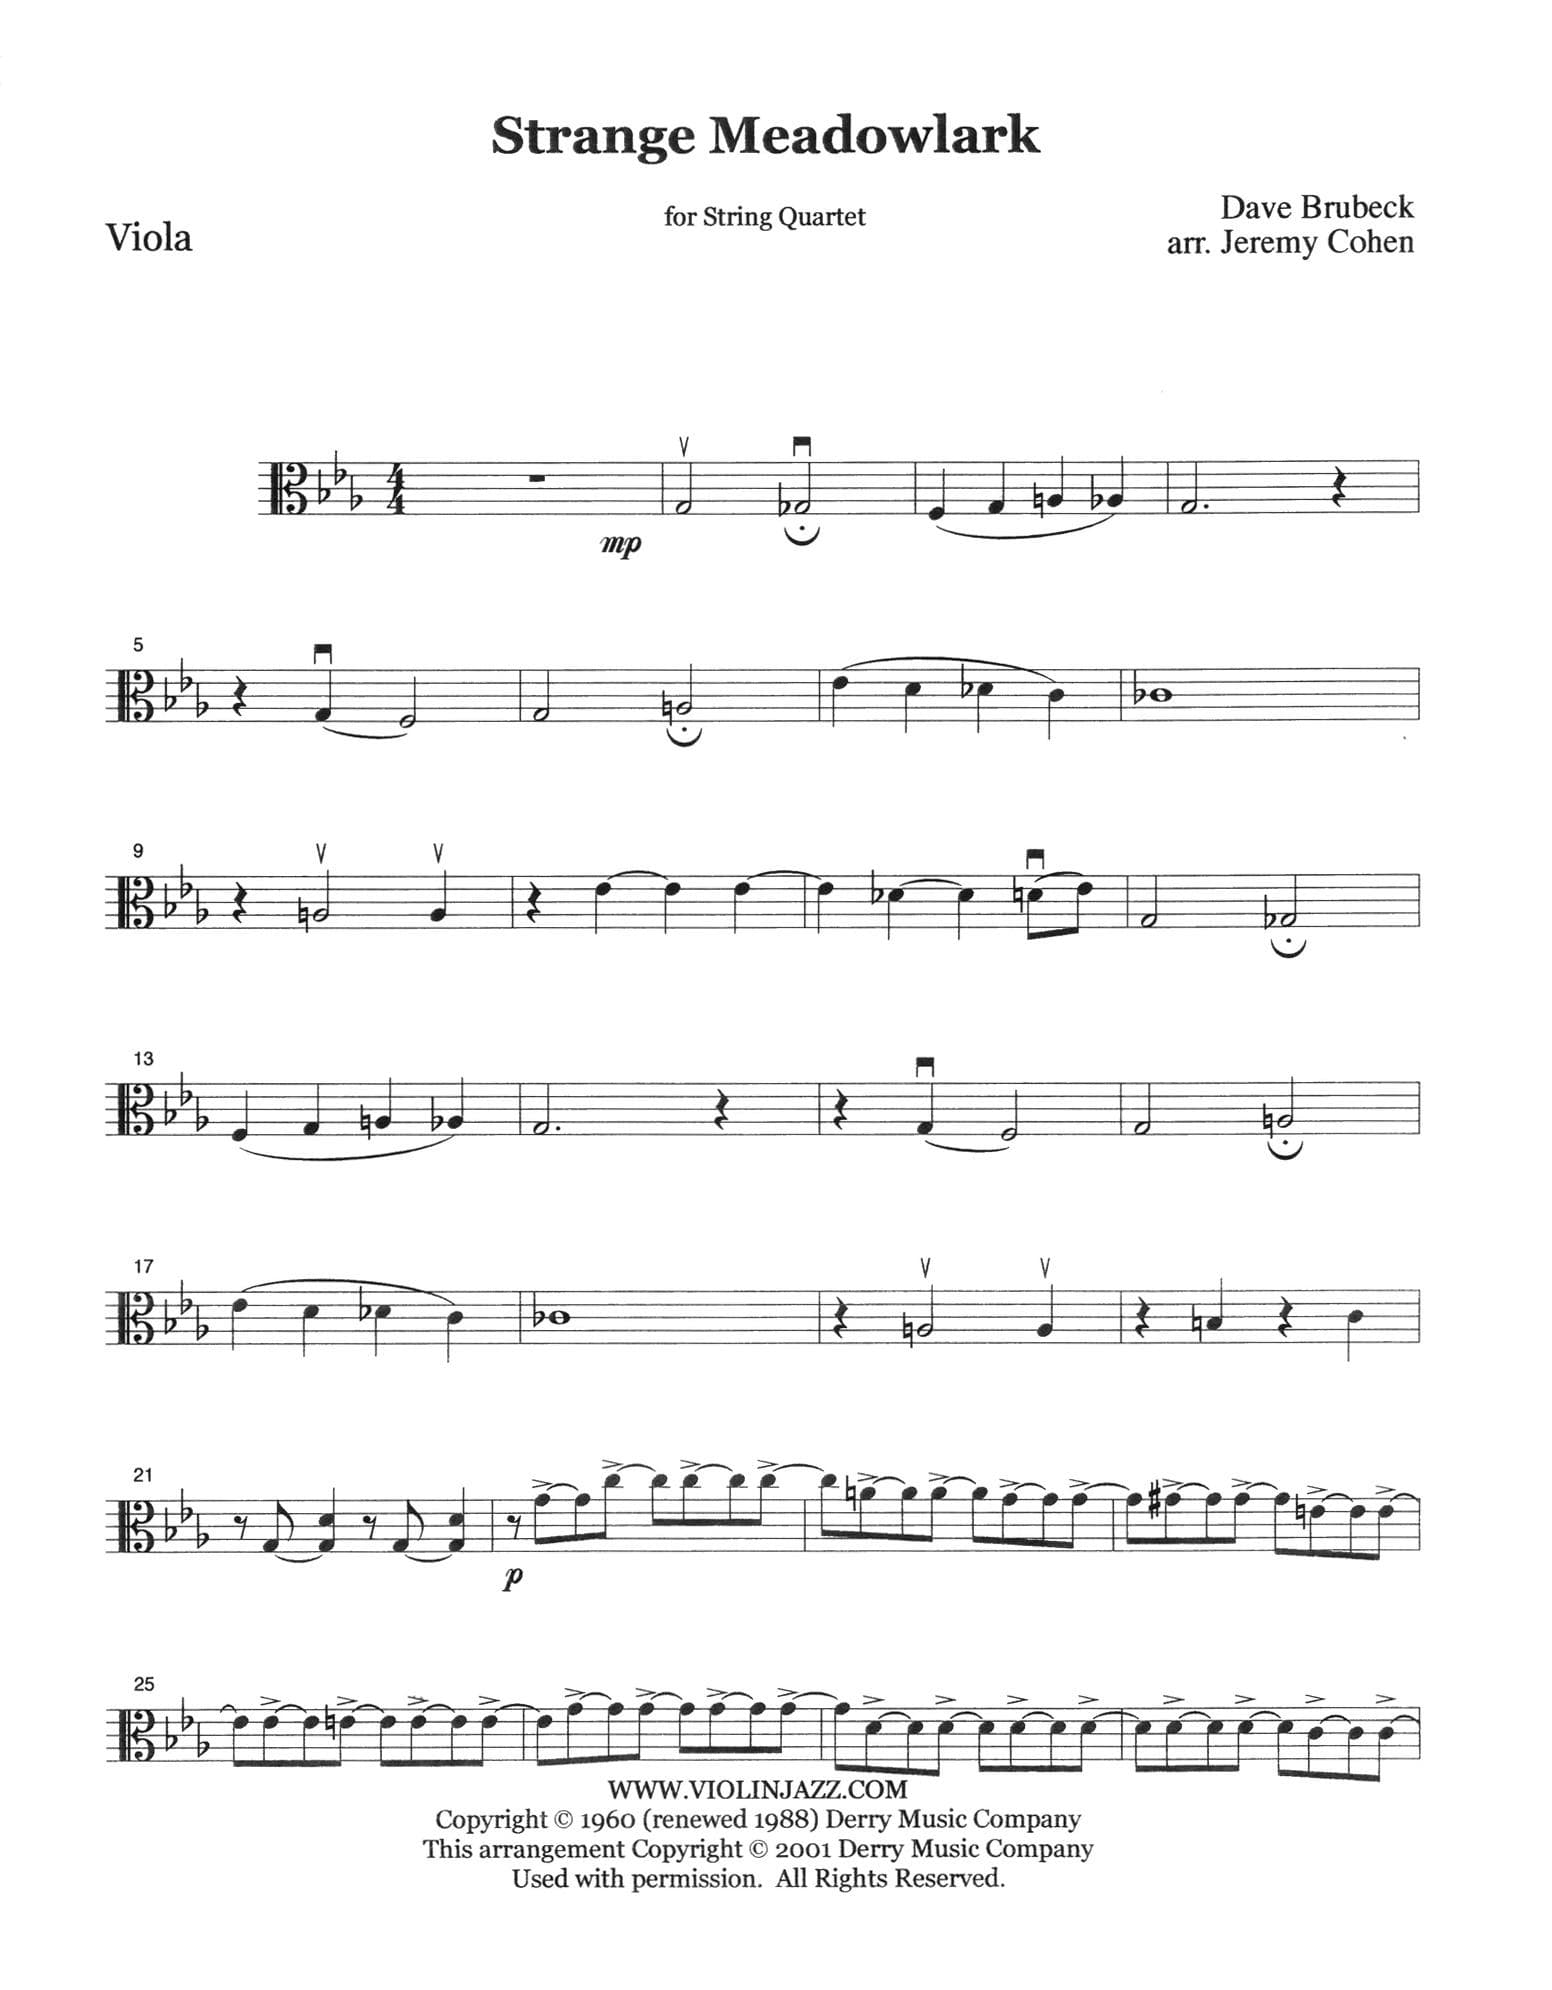 Brubeck, Dave - Strange Meadowlark - Dave Brubeck Collection - for String Quartet - arranged by Jeremy Cohen - Violinjazz Editions